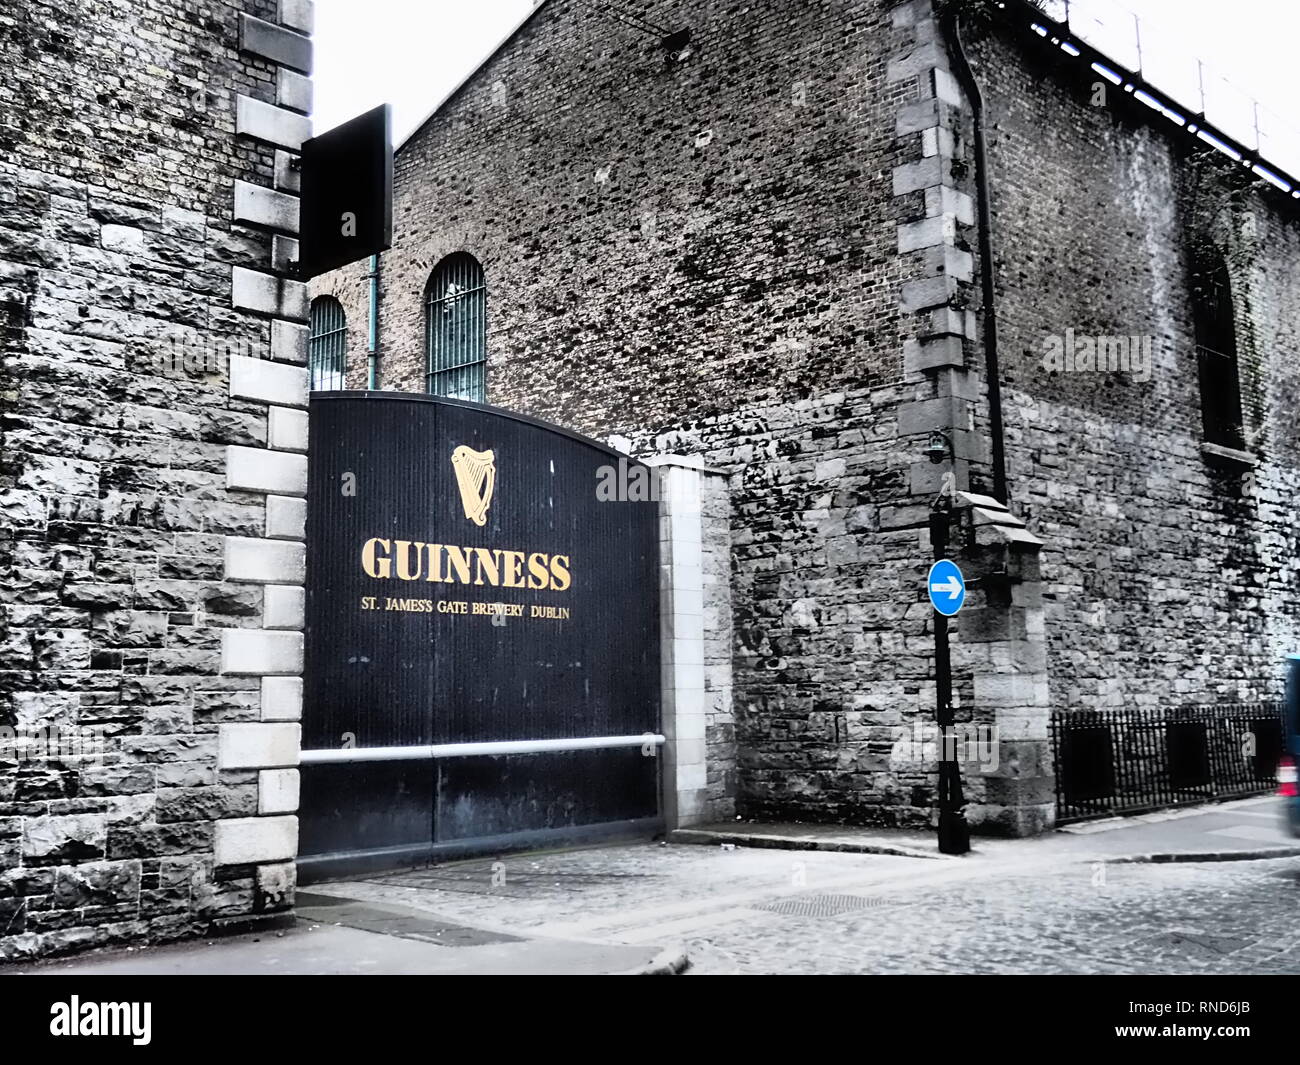 St James Gate, ingresso della fabbrica della Guinness a Dublino - Irlanda Foto Stock